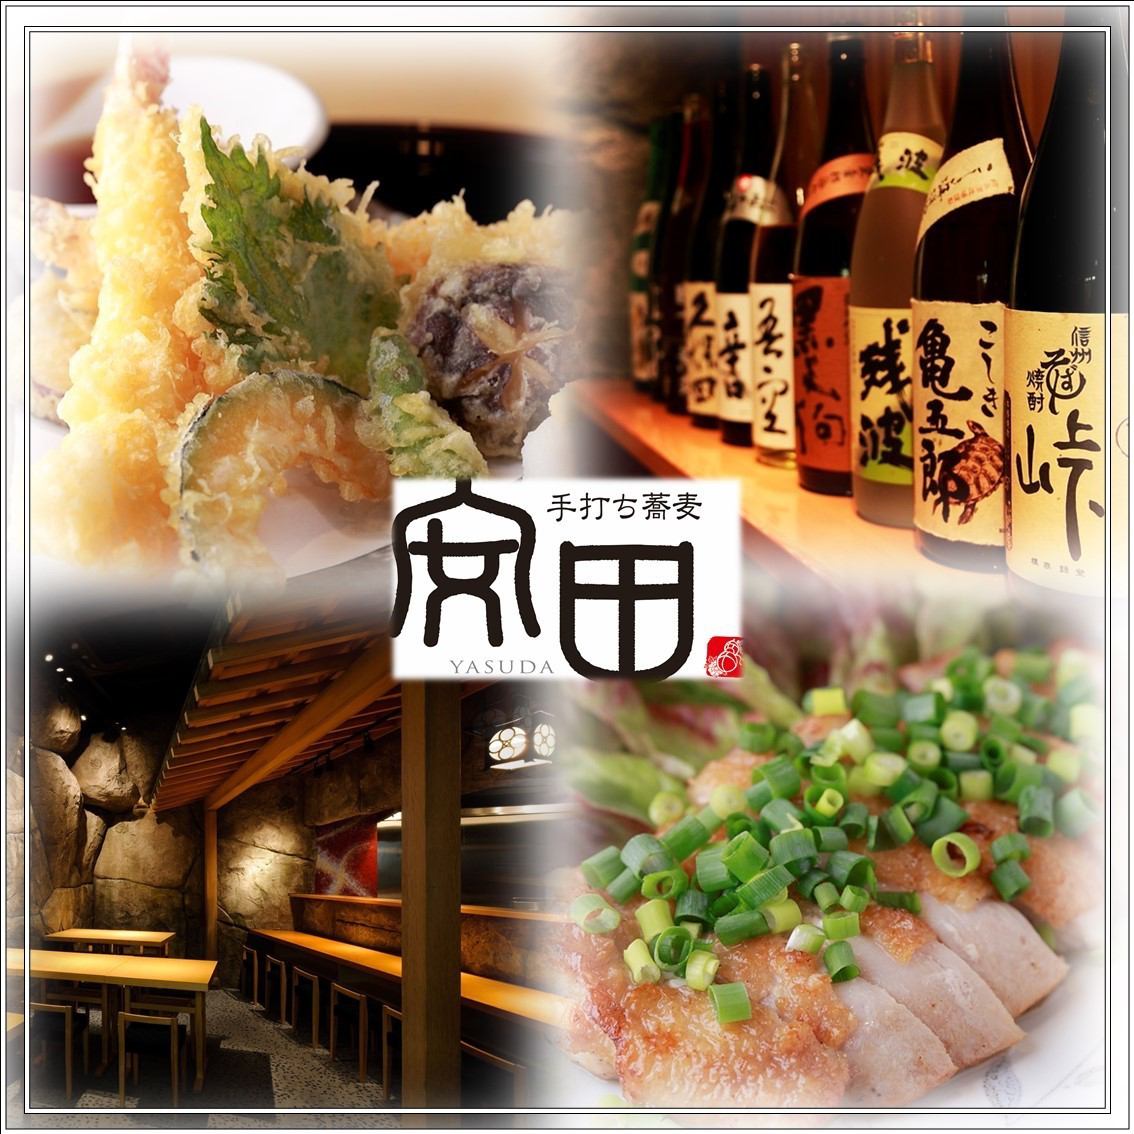 Ichikawa“Yasuda”的熱門私人酒吧將接受無限暢飲飲料，宴會和包機服務。還請訪問女子協會！